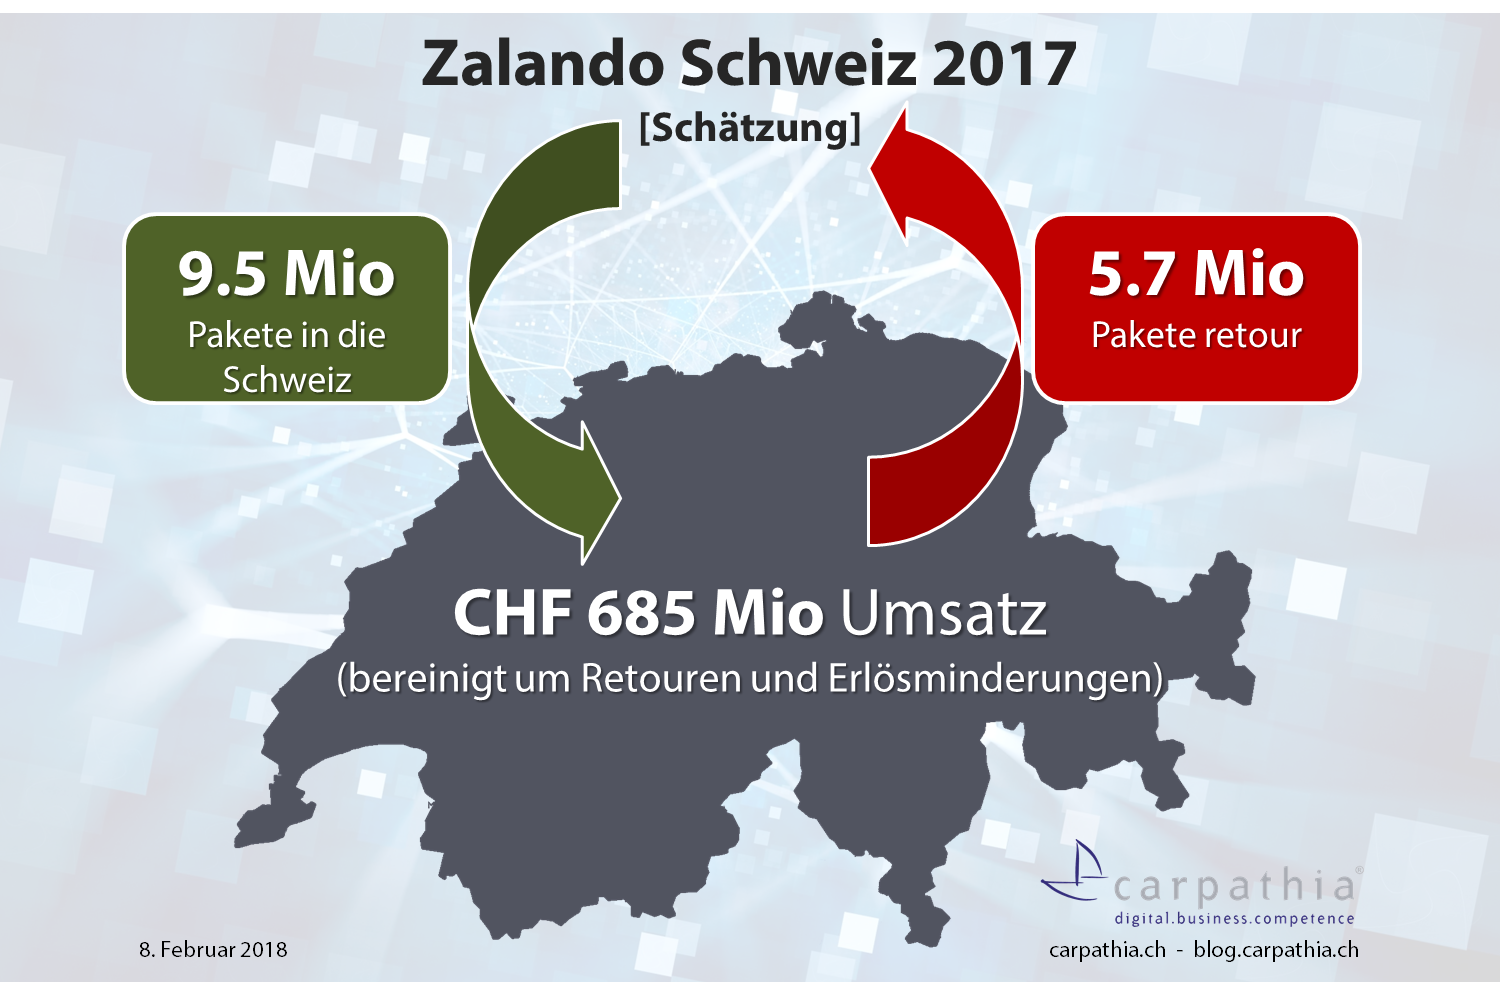 Schätzung Umsatz und Paketmengen Zalando Schweiz 2017 – Quelle: Carpathia AG